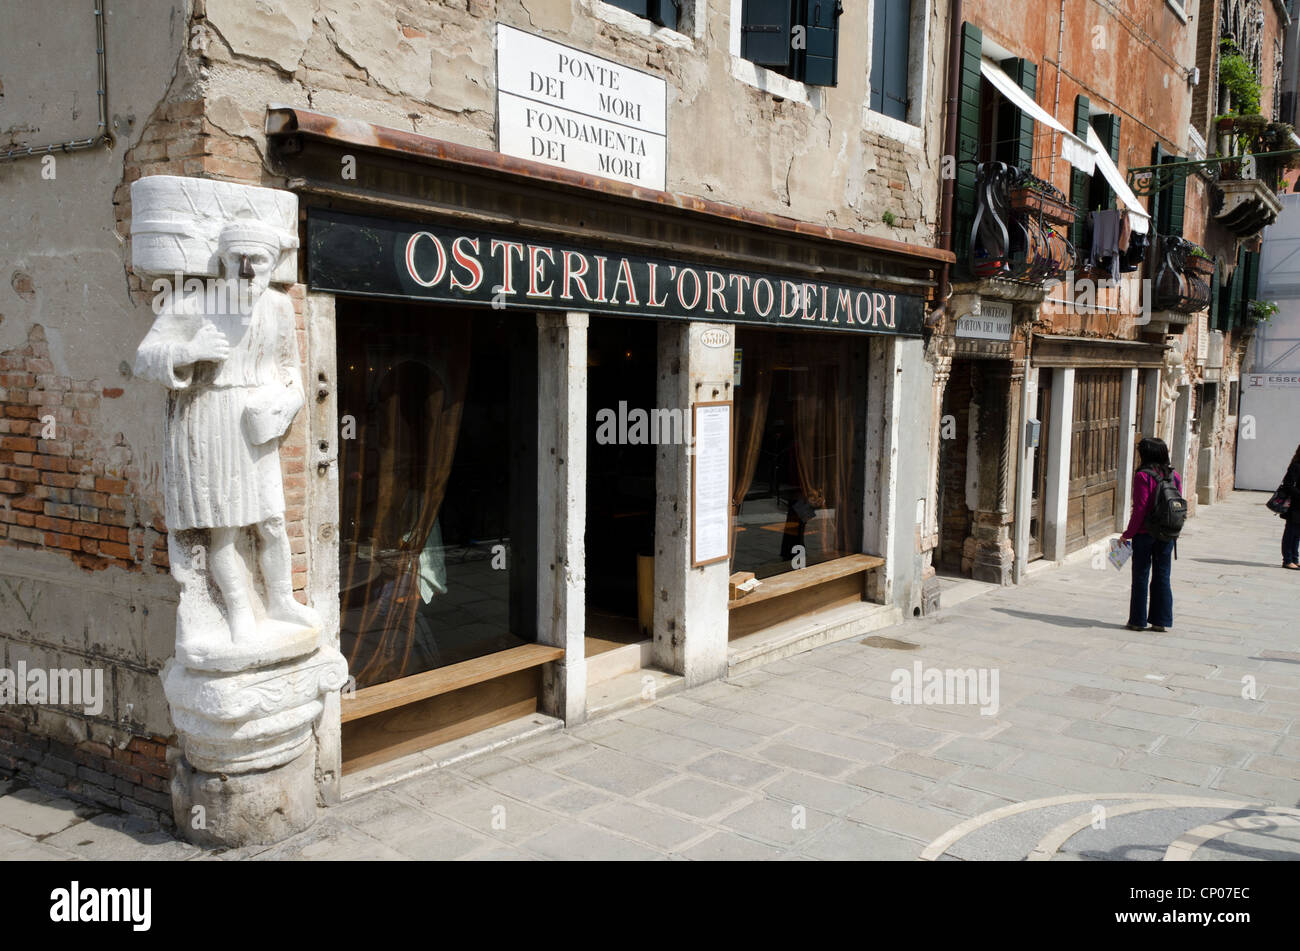 Statue of Sior Antonio Rioba a moorish merchant in the corner of 'Osteria l'orto dei Mori' restaurant in Campo dei Mori - sestiere Cannareggio, Venice - Italy Stock Photo